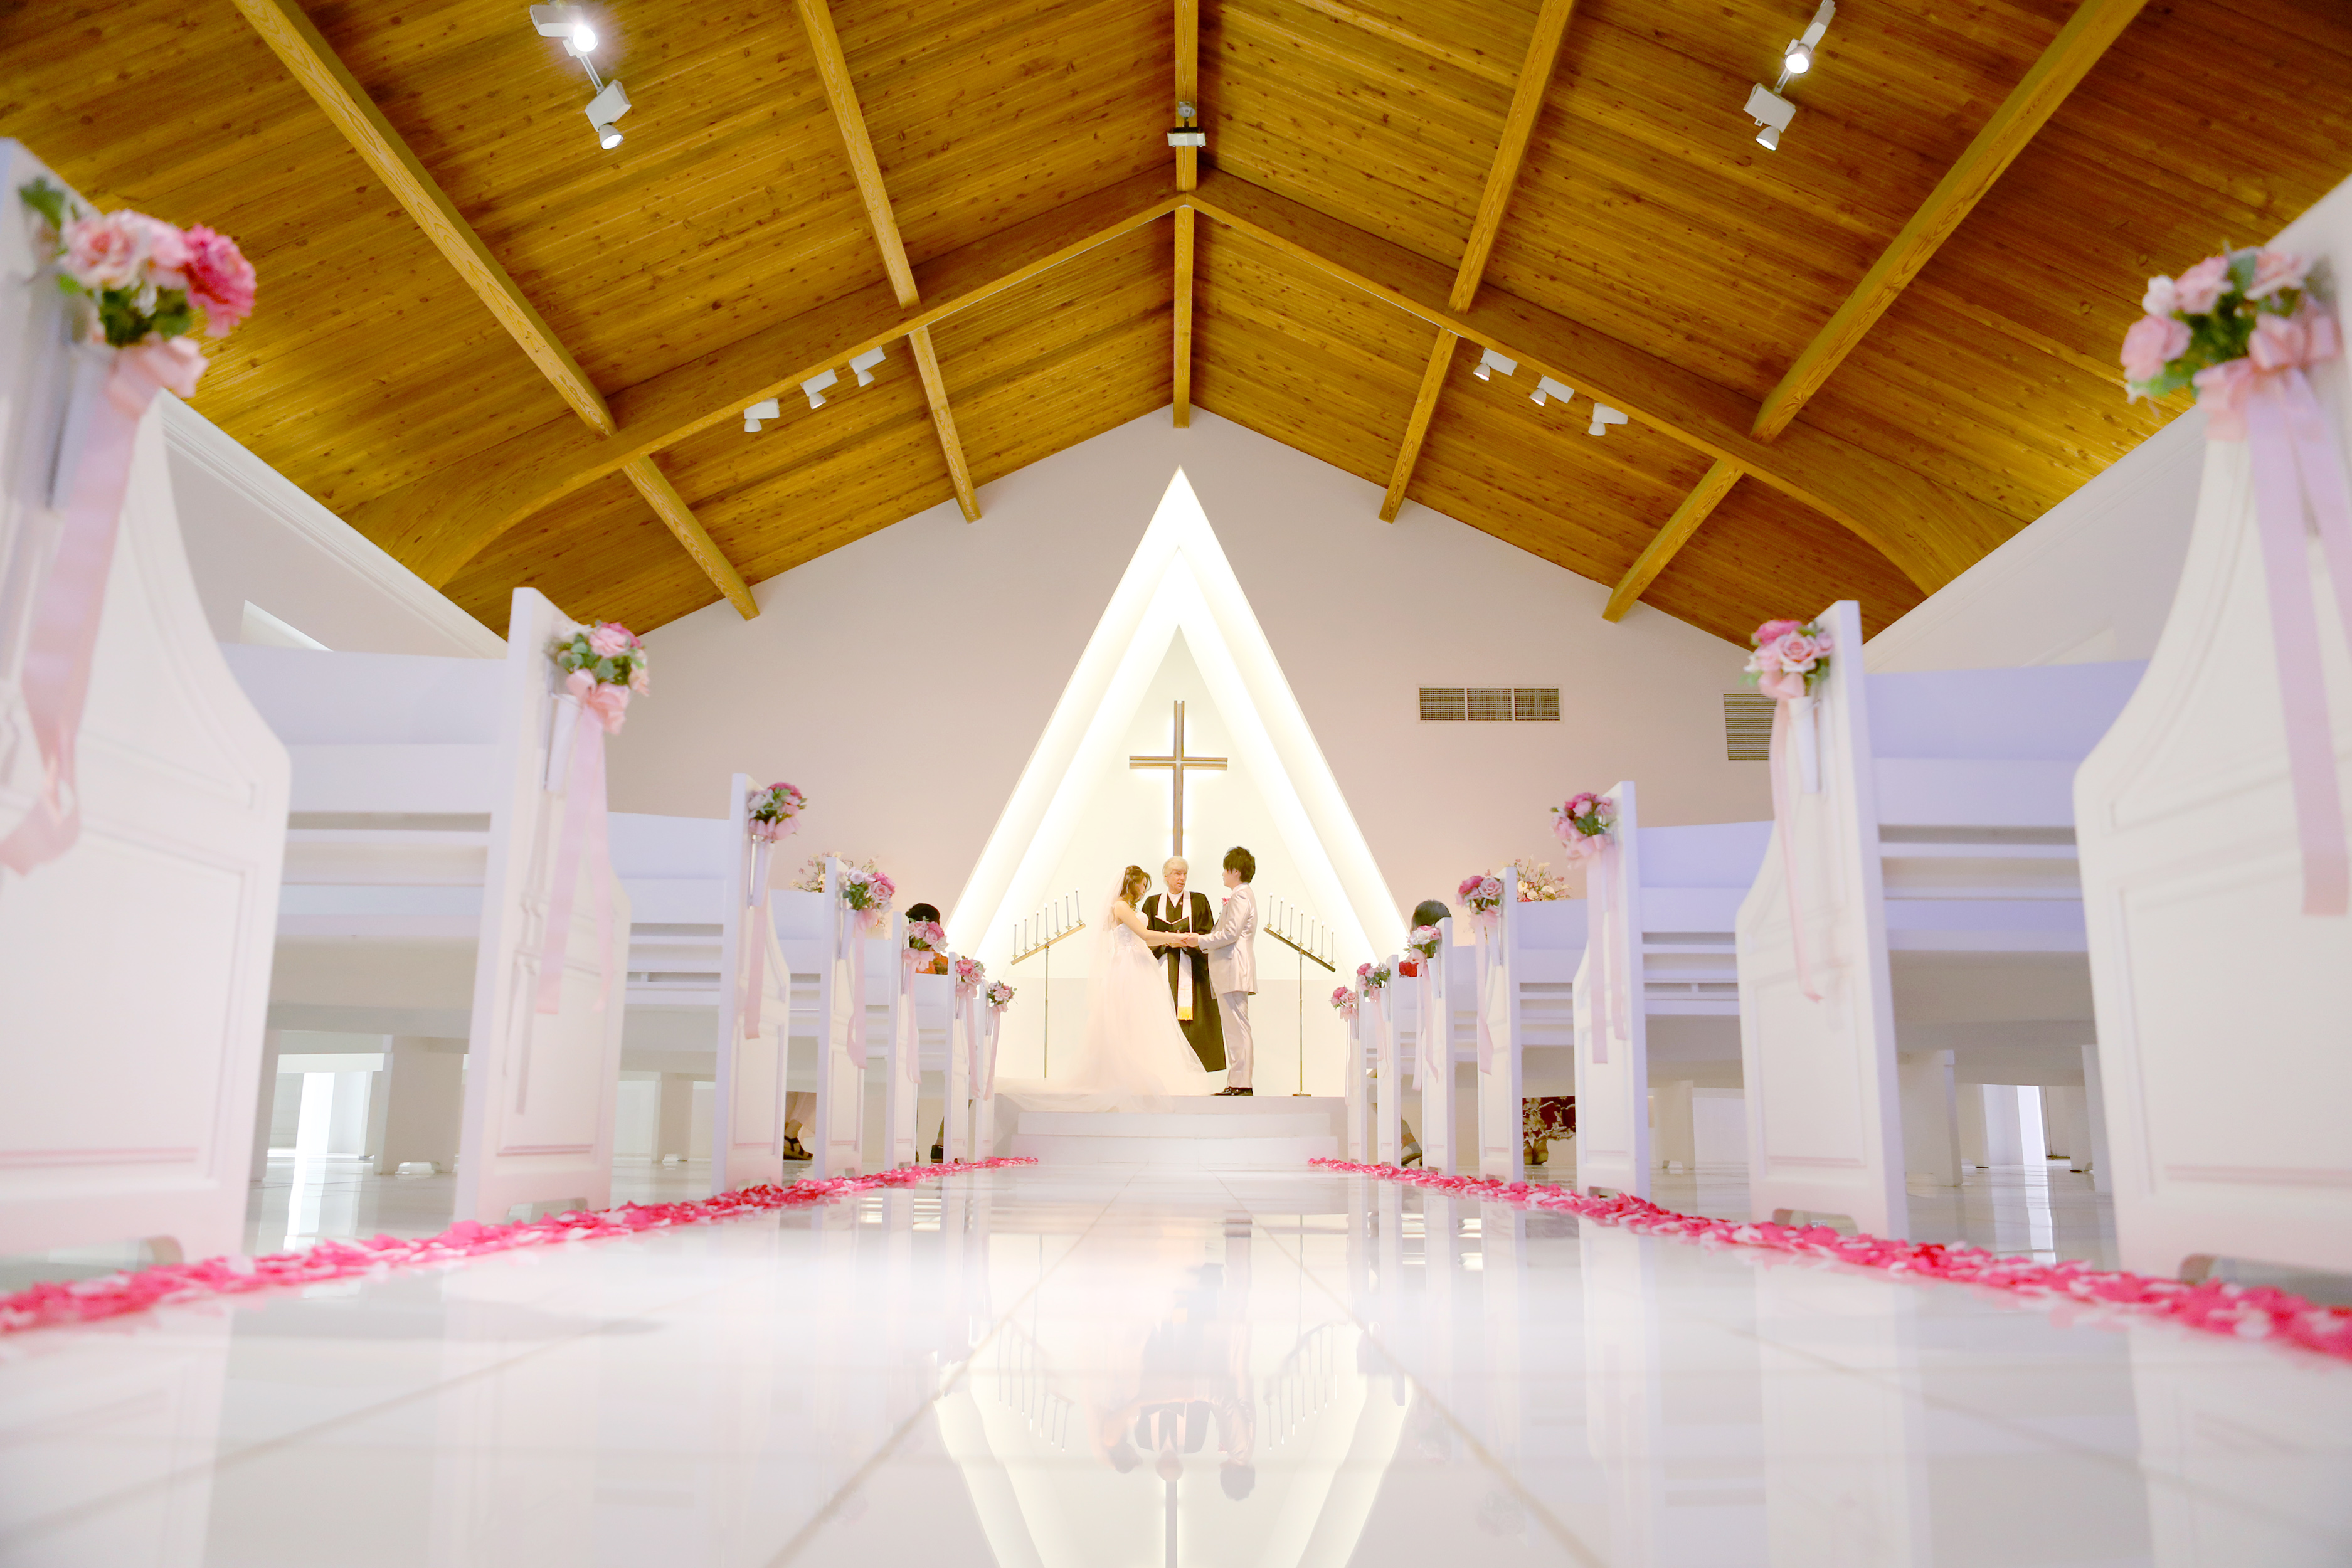 プリマリエ教会で結婚式を挙げる新郎新婦の写真